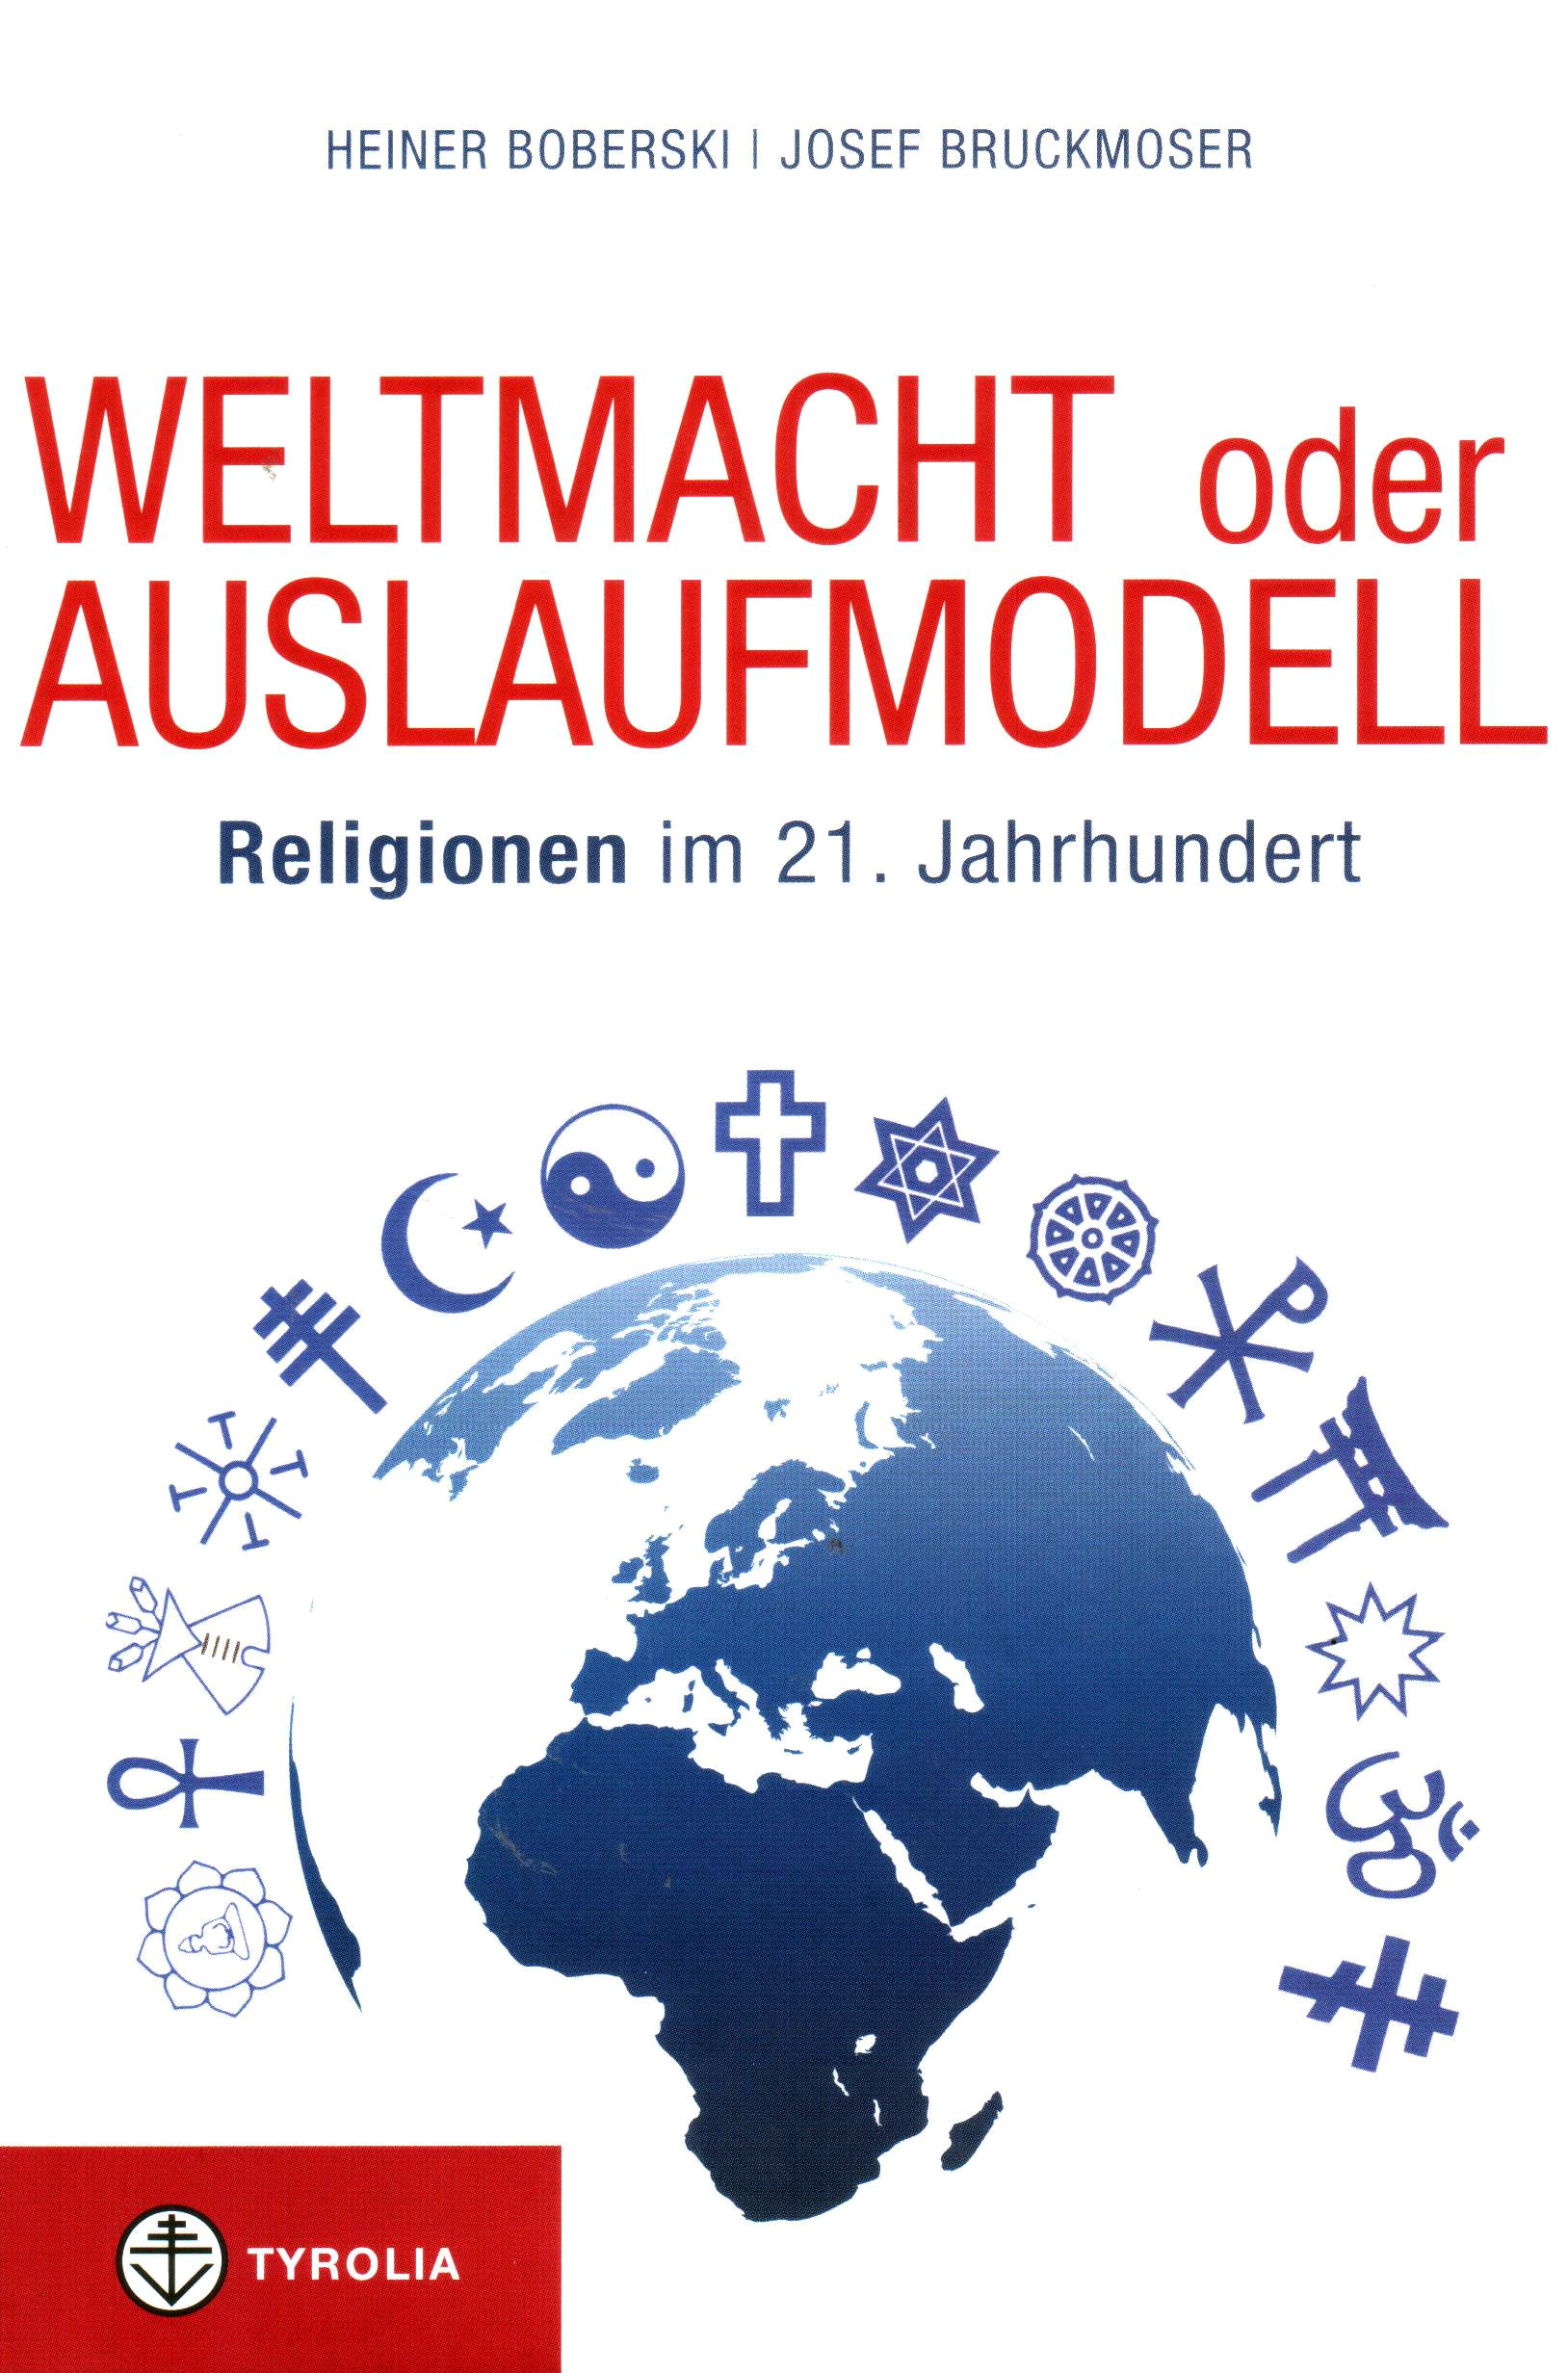 Weltmacht oder Auslaufmodell – Religionen im 21. Jahrhundert